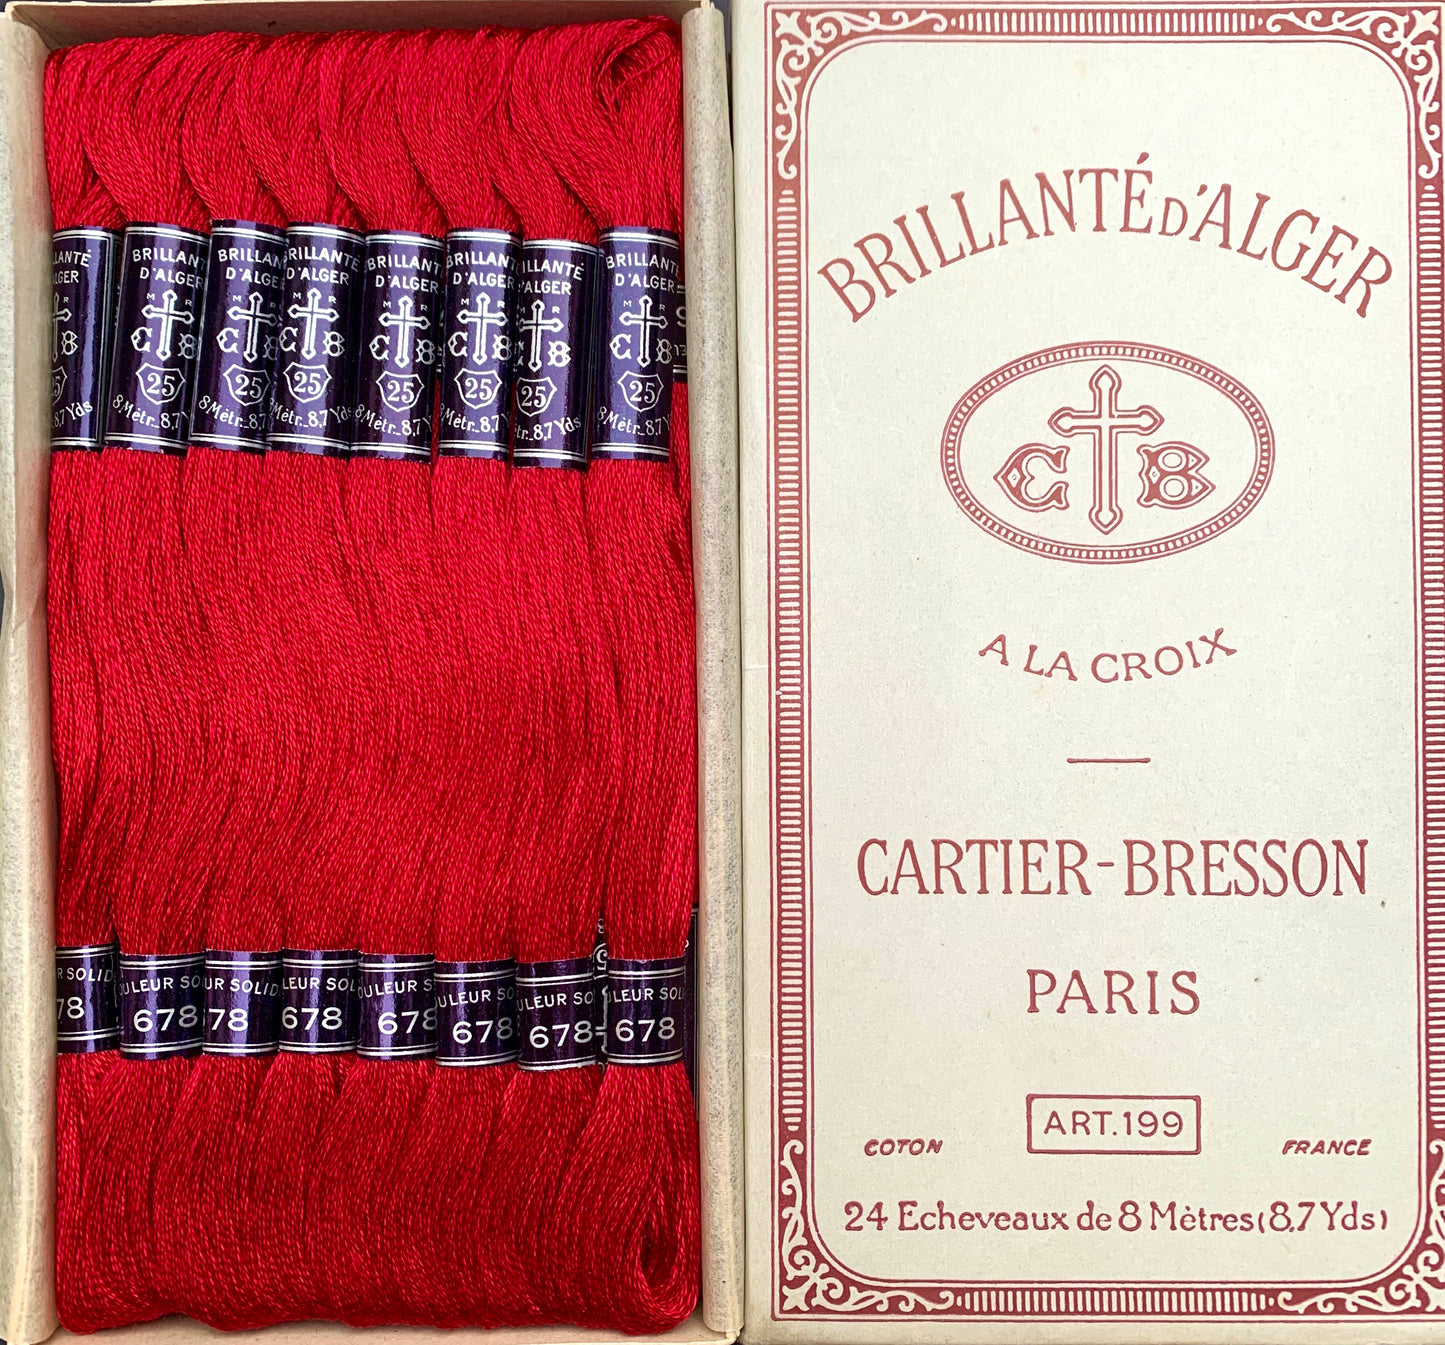 Vintage CARTIER-BRESSON Crimson Red (678) Cotton Embroidery Thread 24 skeins x 8m